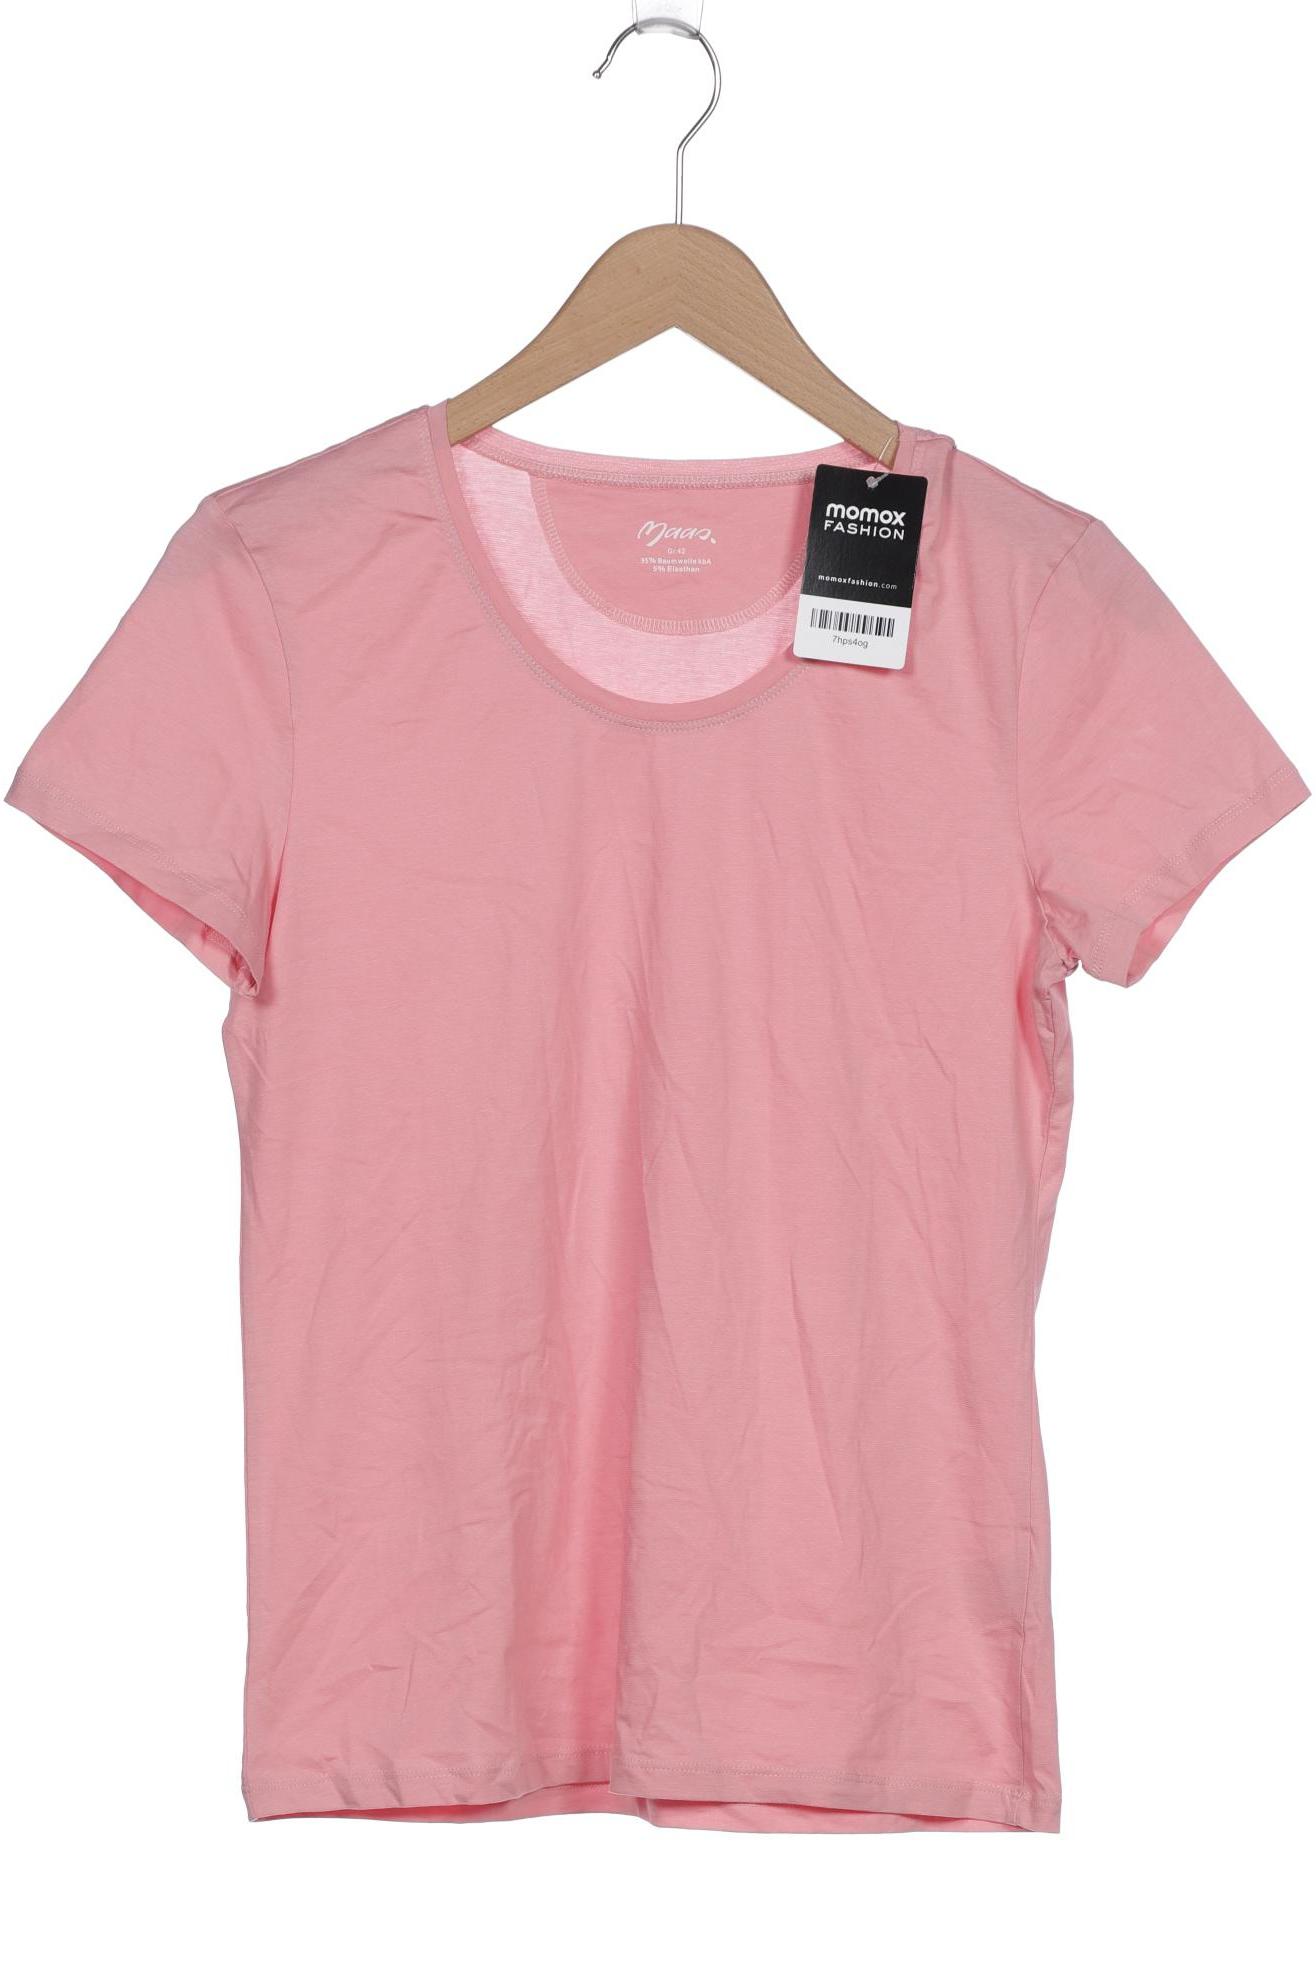 Maas Damen T-Shirt, pink, Gr. 42 von Maas